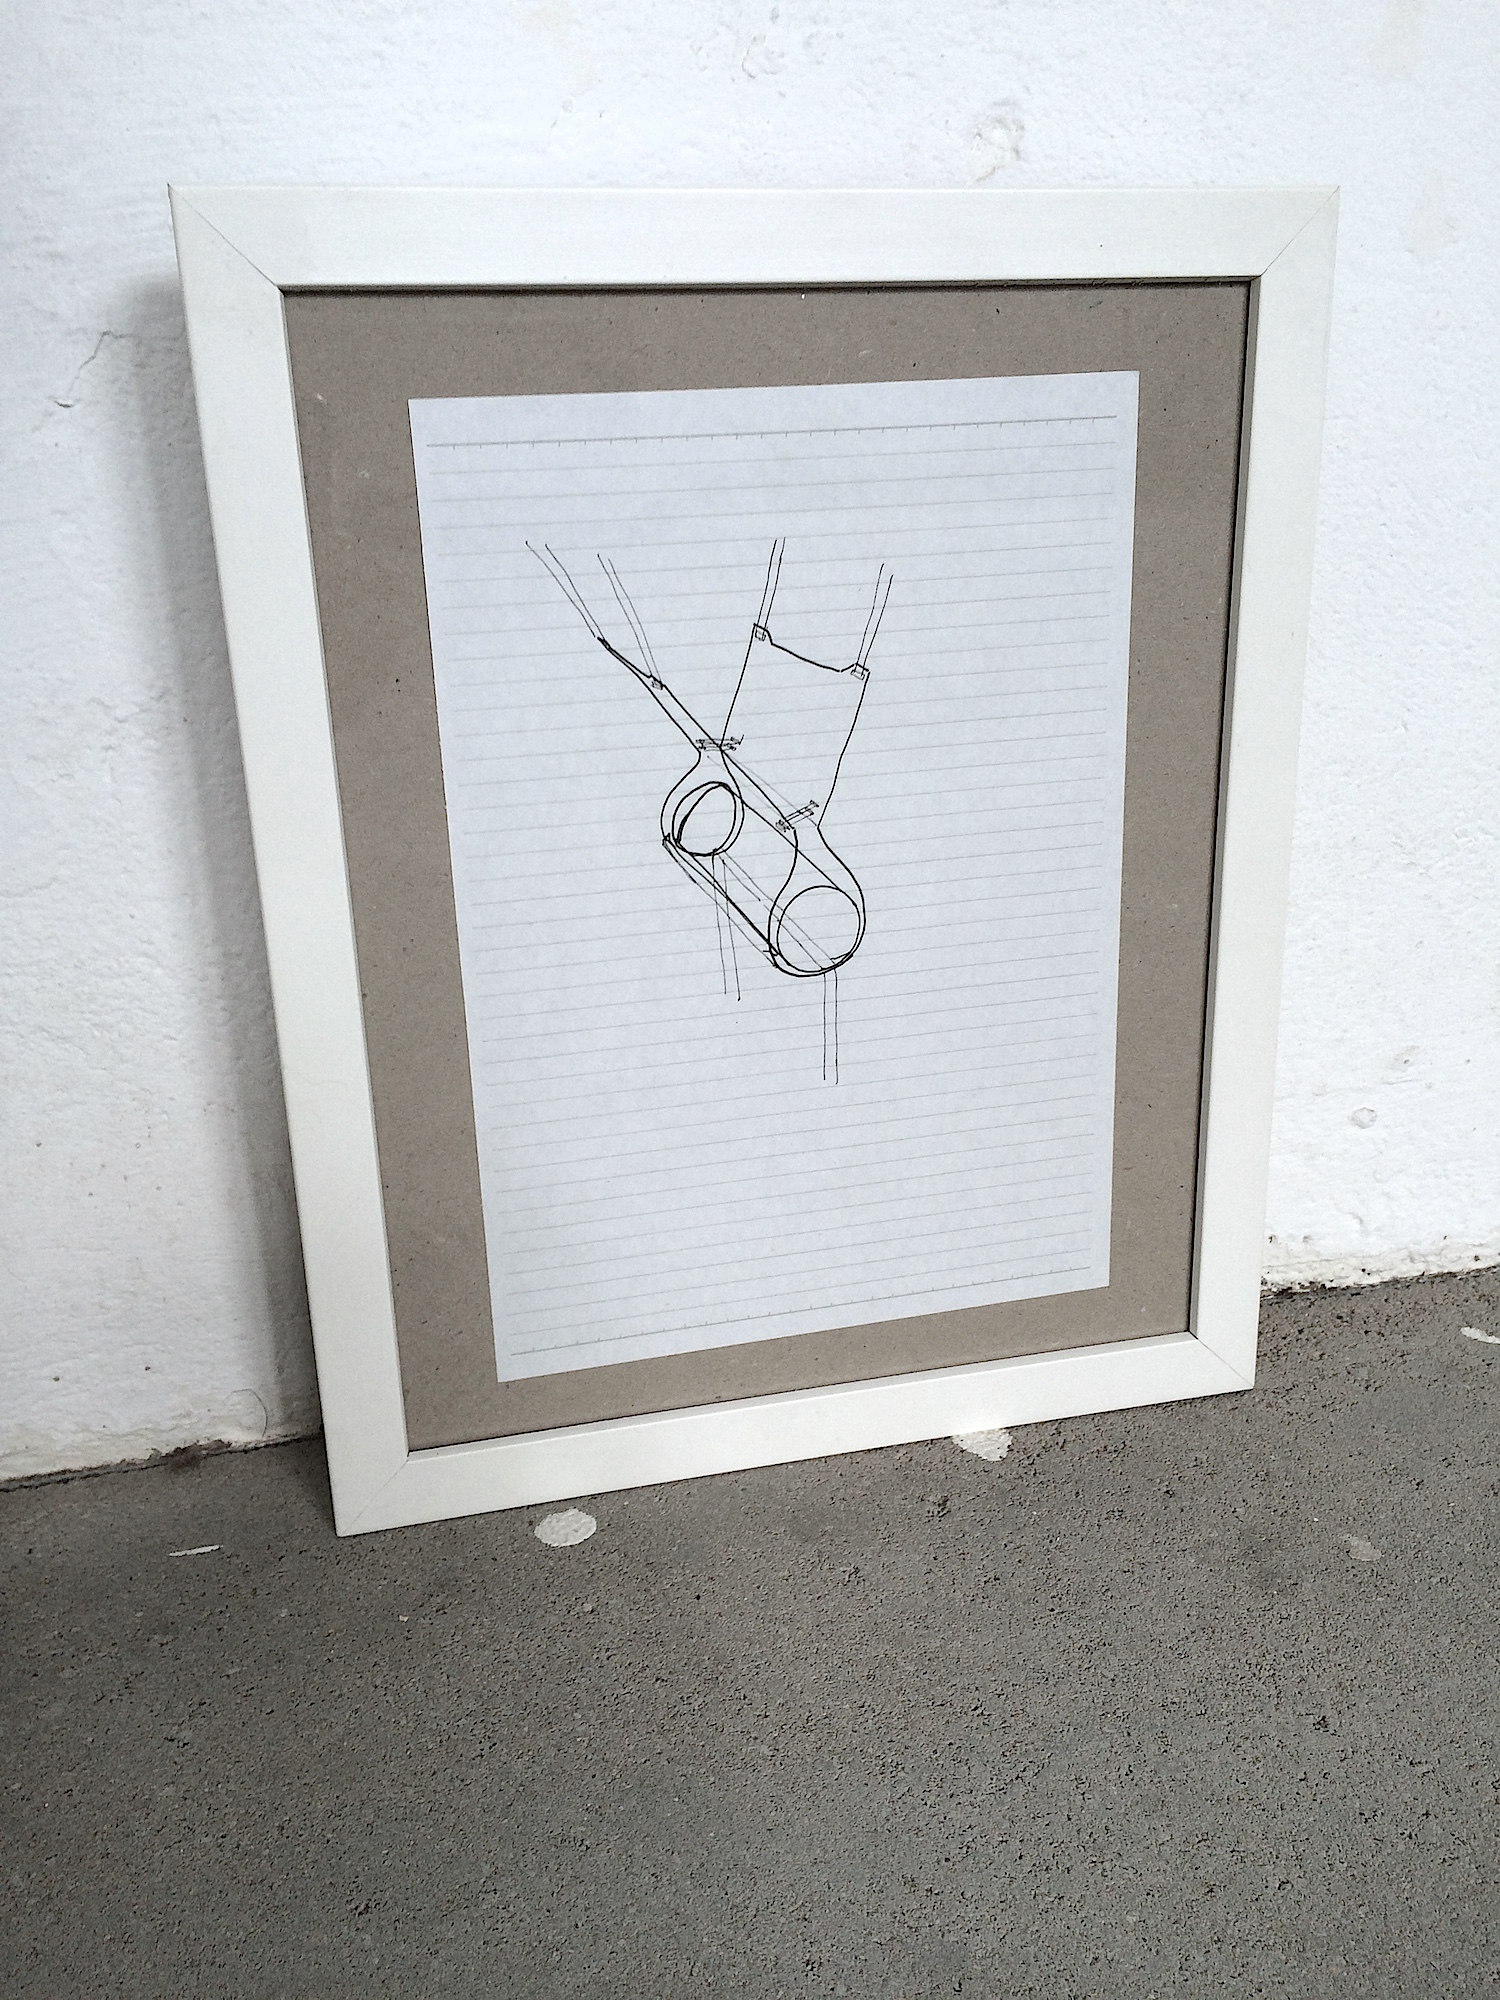 Untitled (Hanging Tube), 2014